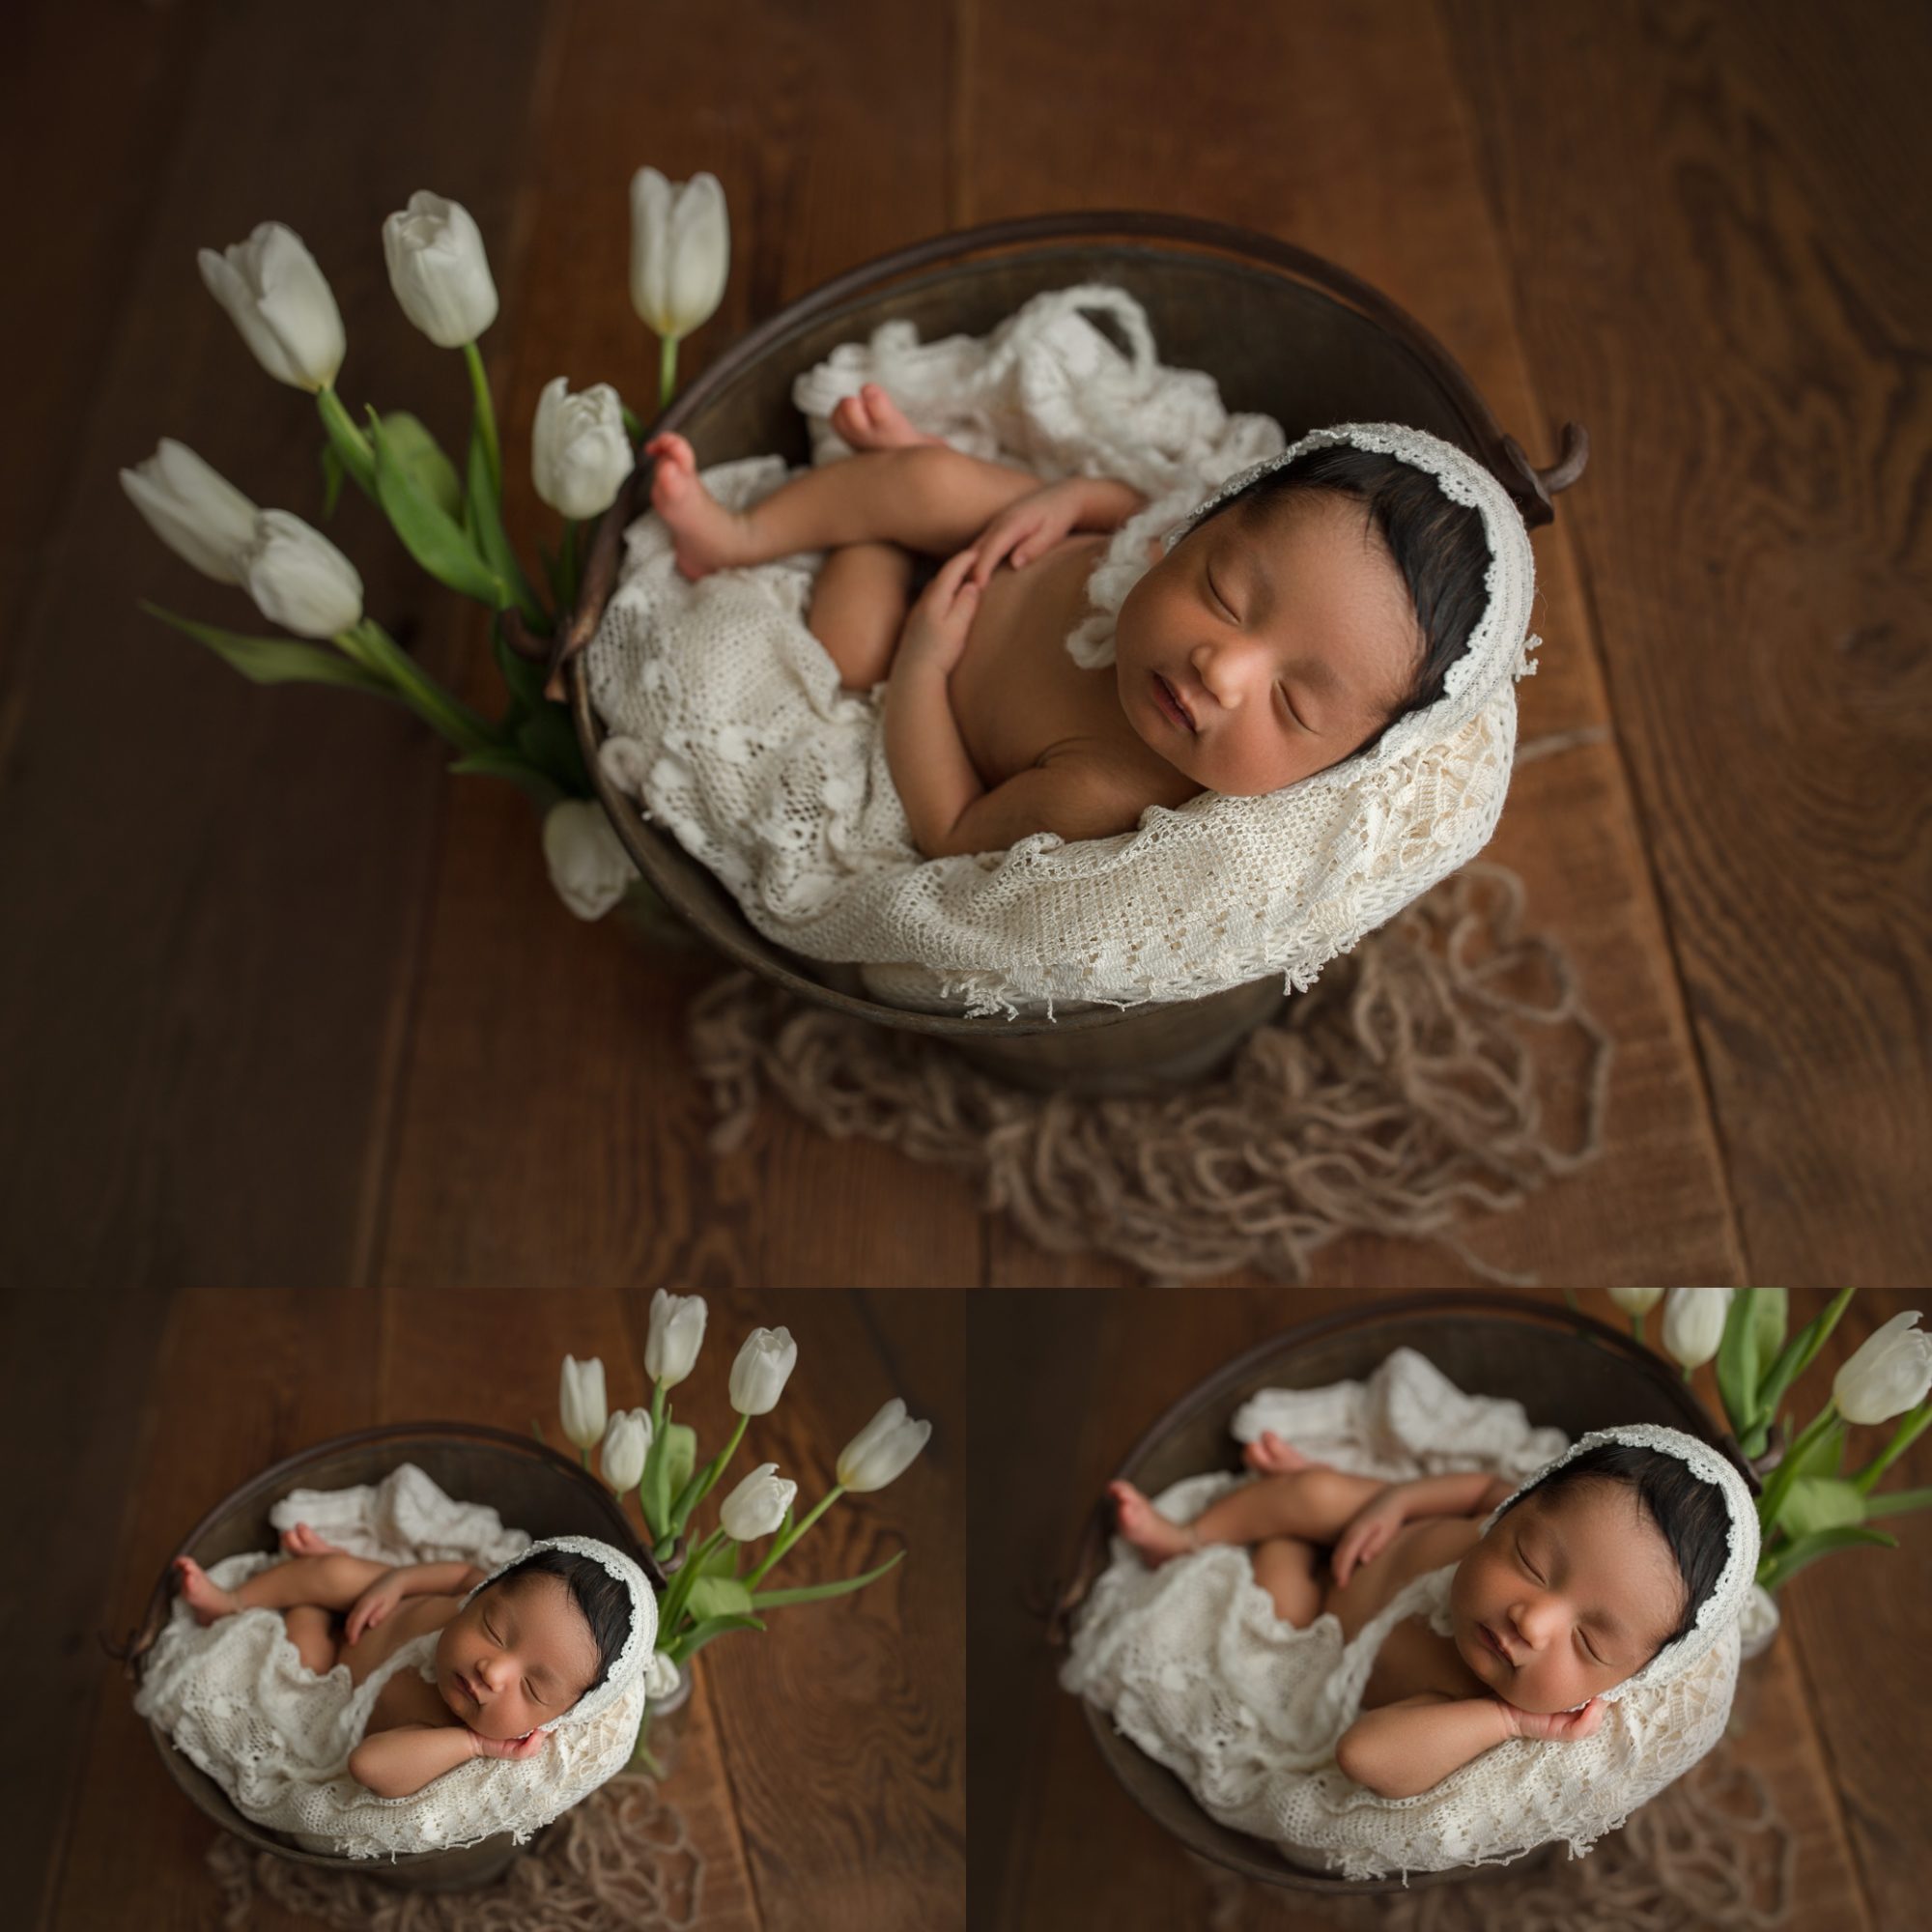 Olympia Newborn Baby Photographer | newborn photography seattle | tacoma baby photographer